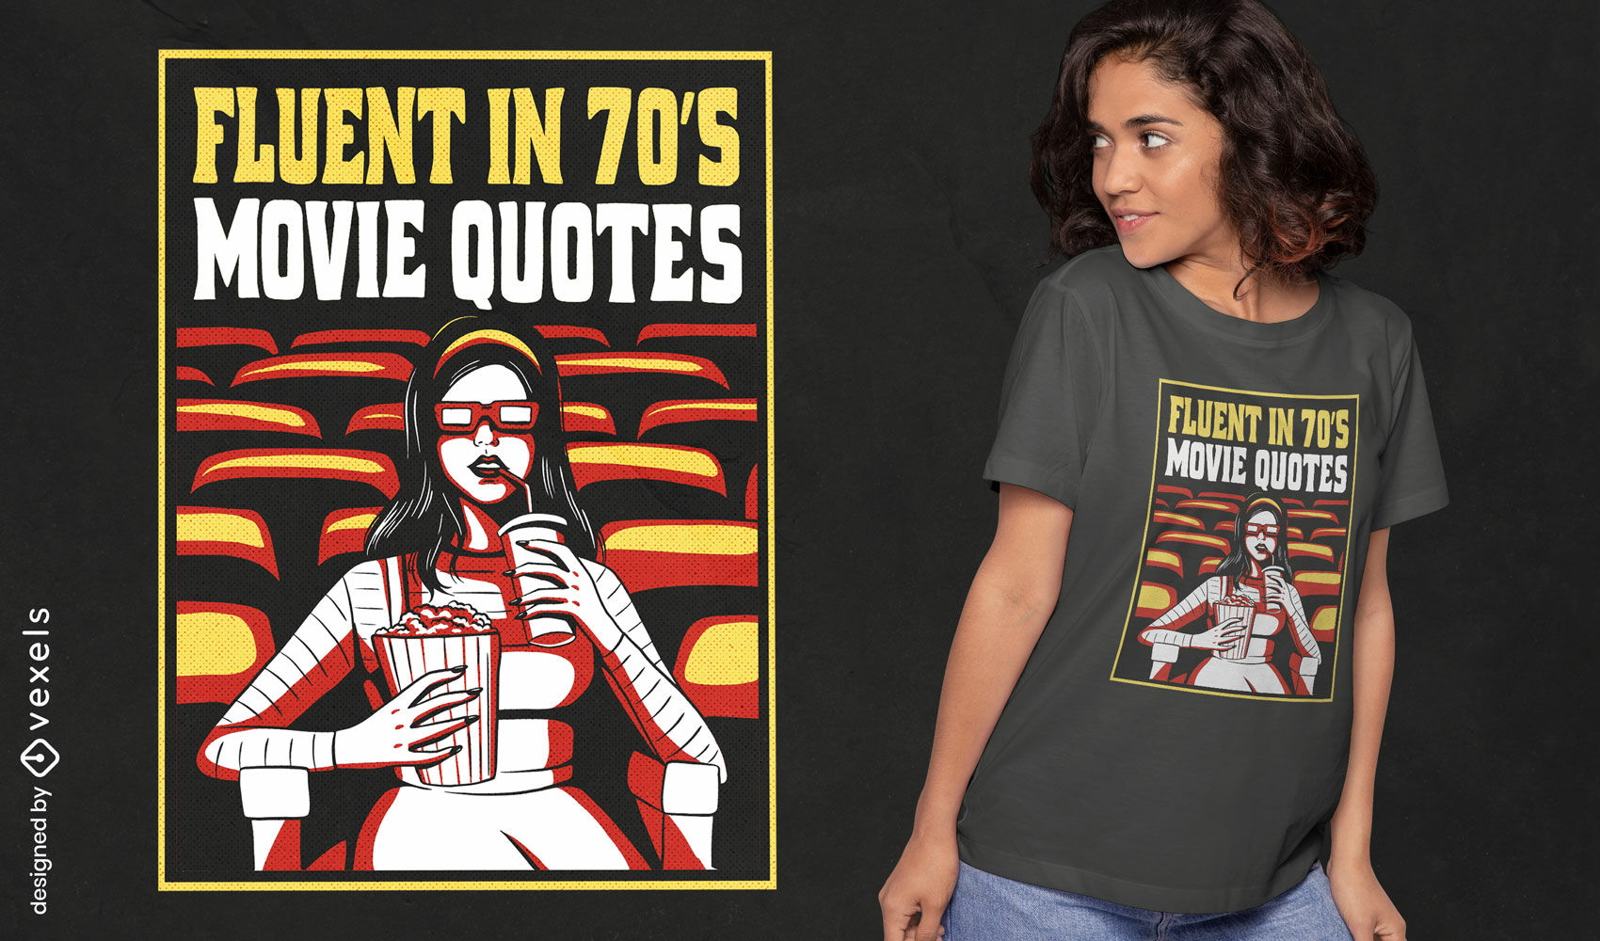 70's movie quotes t-shirt design